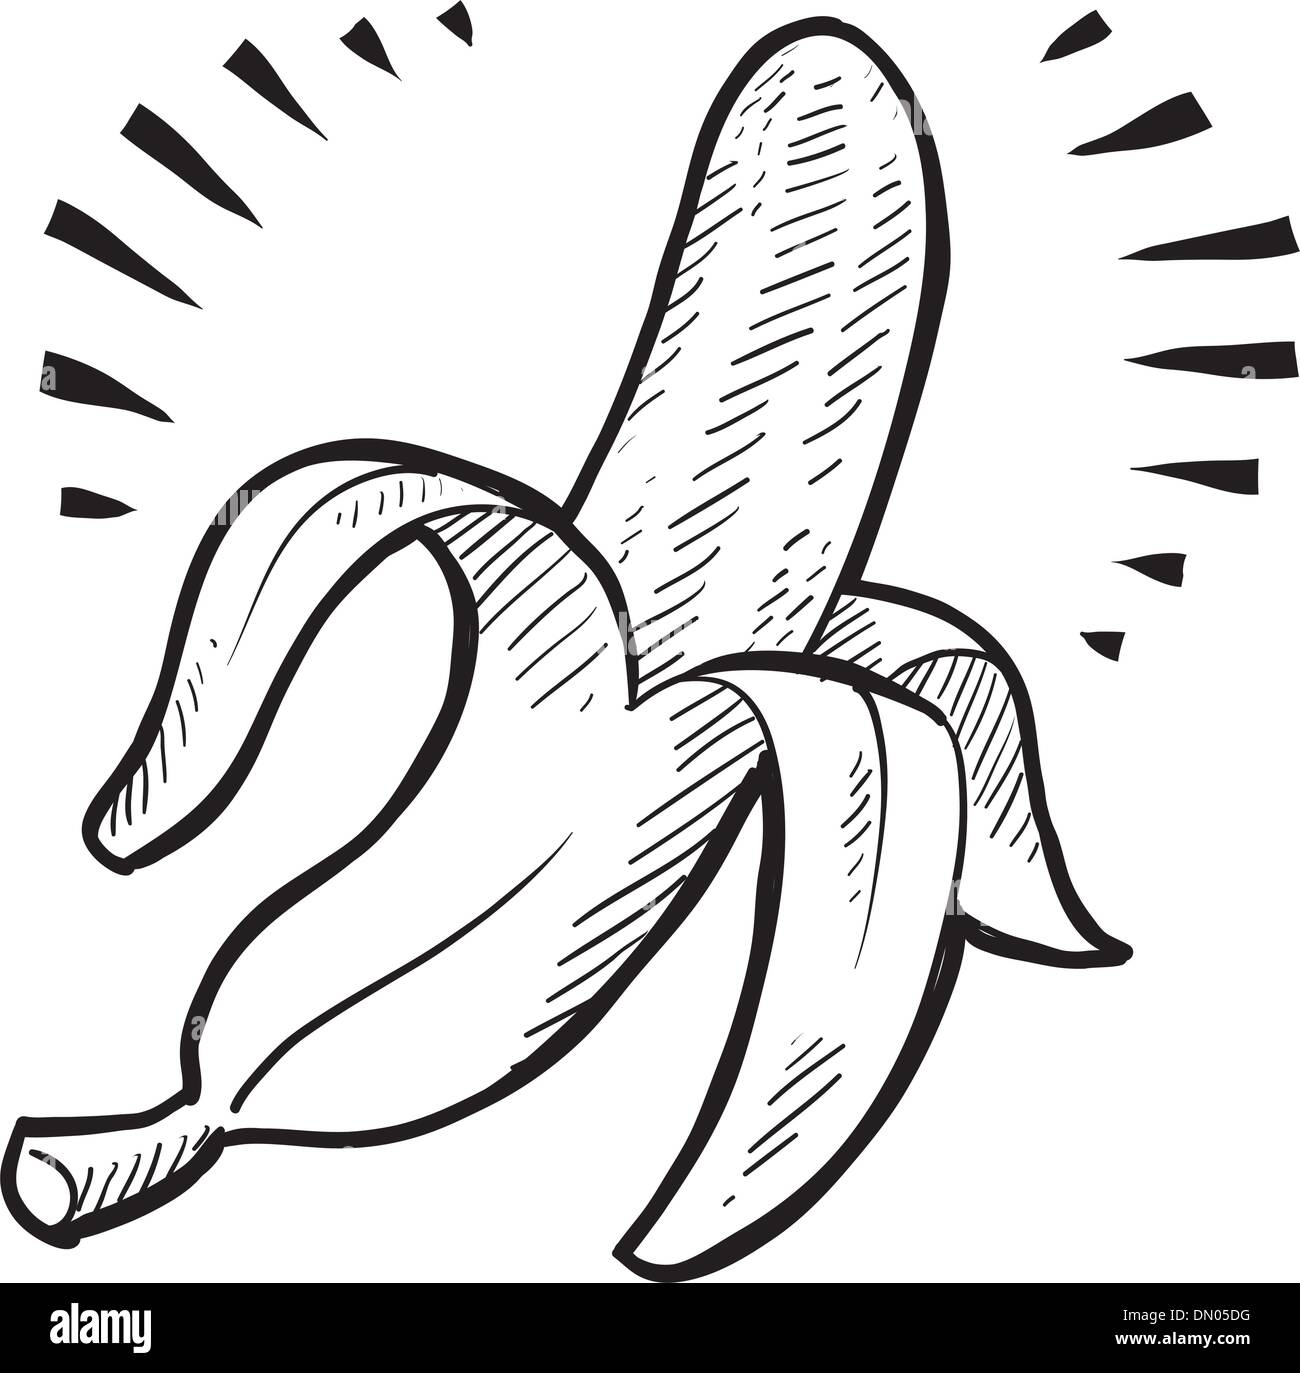 Banana vector sketch Stock Vector